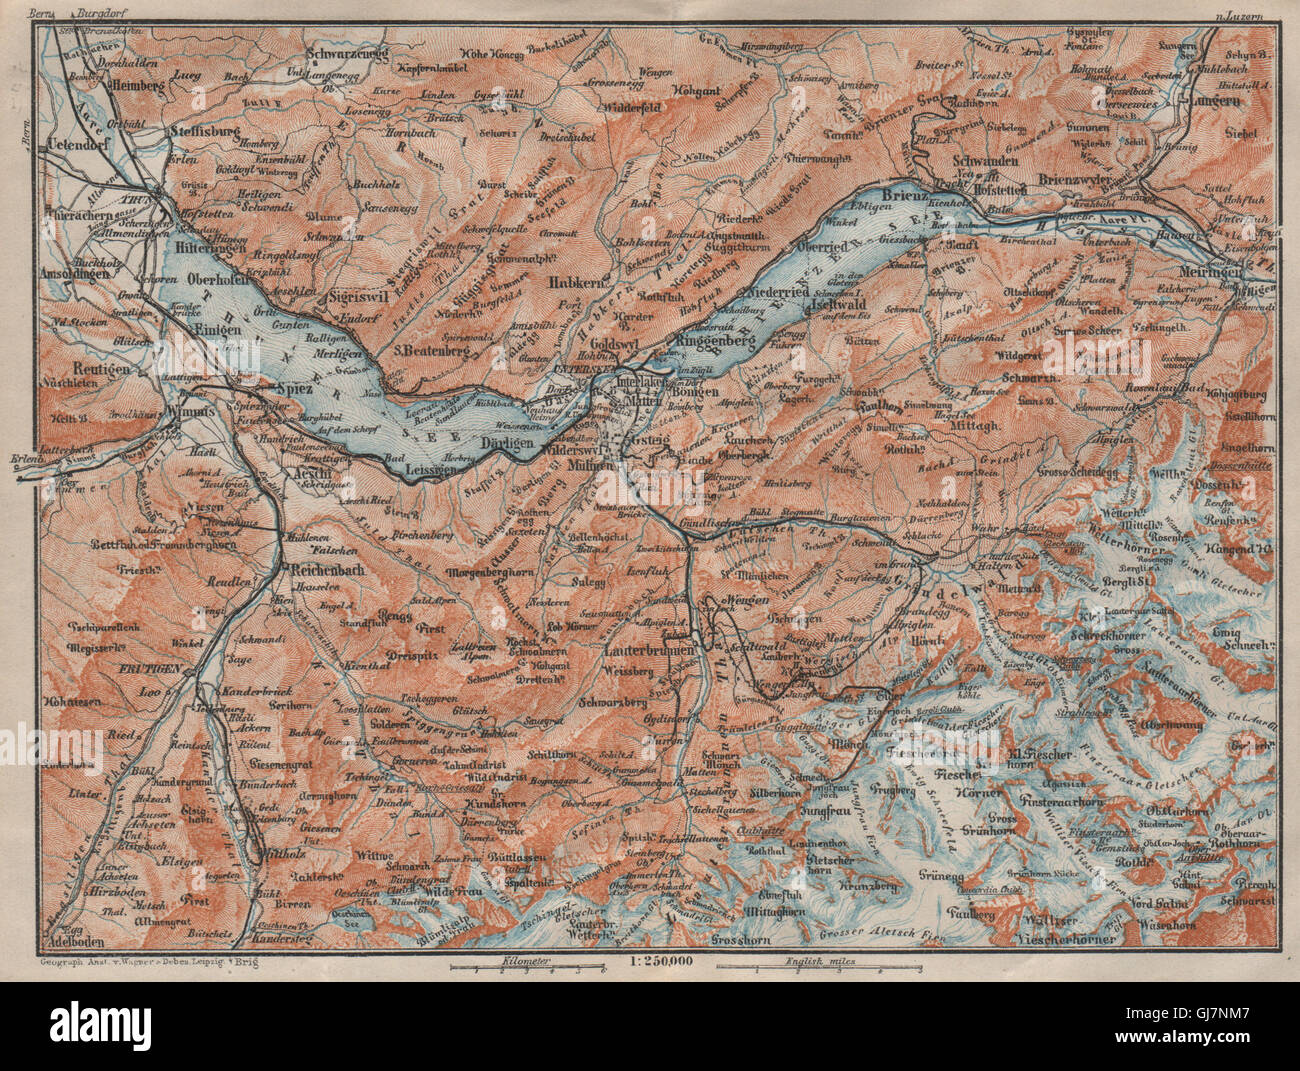 BERNESE OBERLAND. Wengen Mürren Grundelwald Reutigen Interlaken Eiger, 1922 map Stock Photo